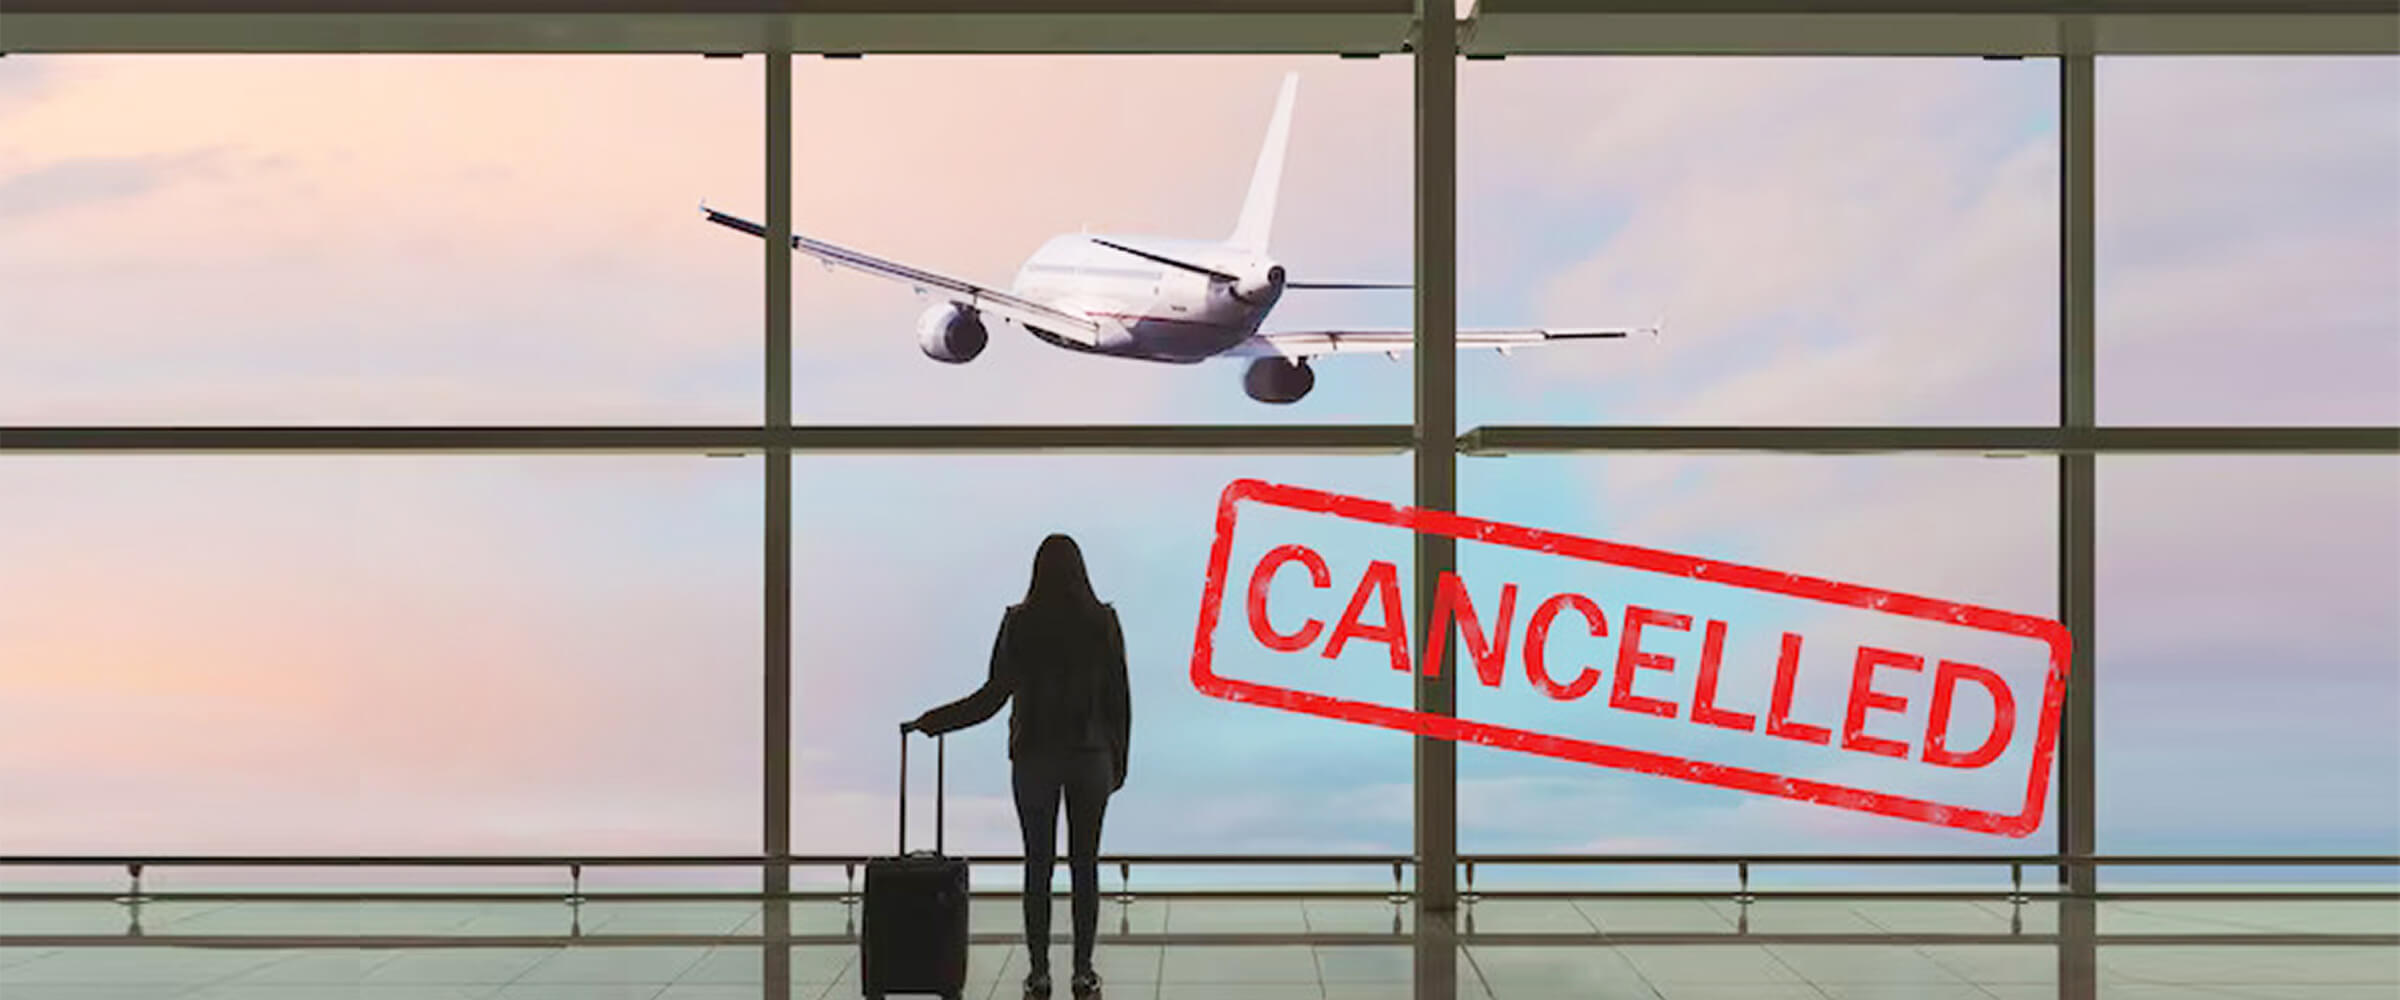 Qatar airways cancellation